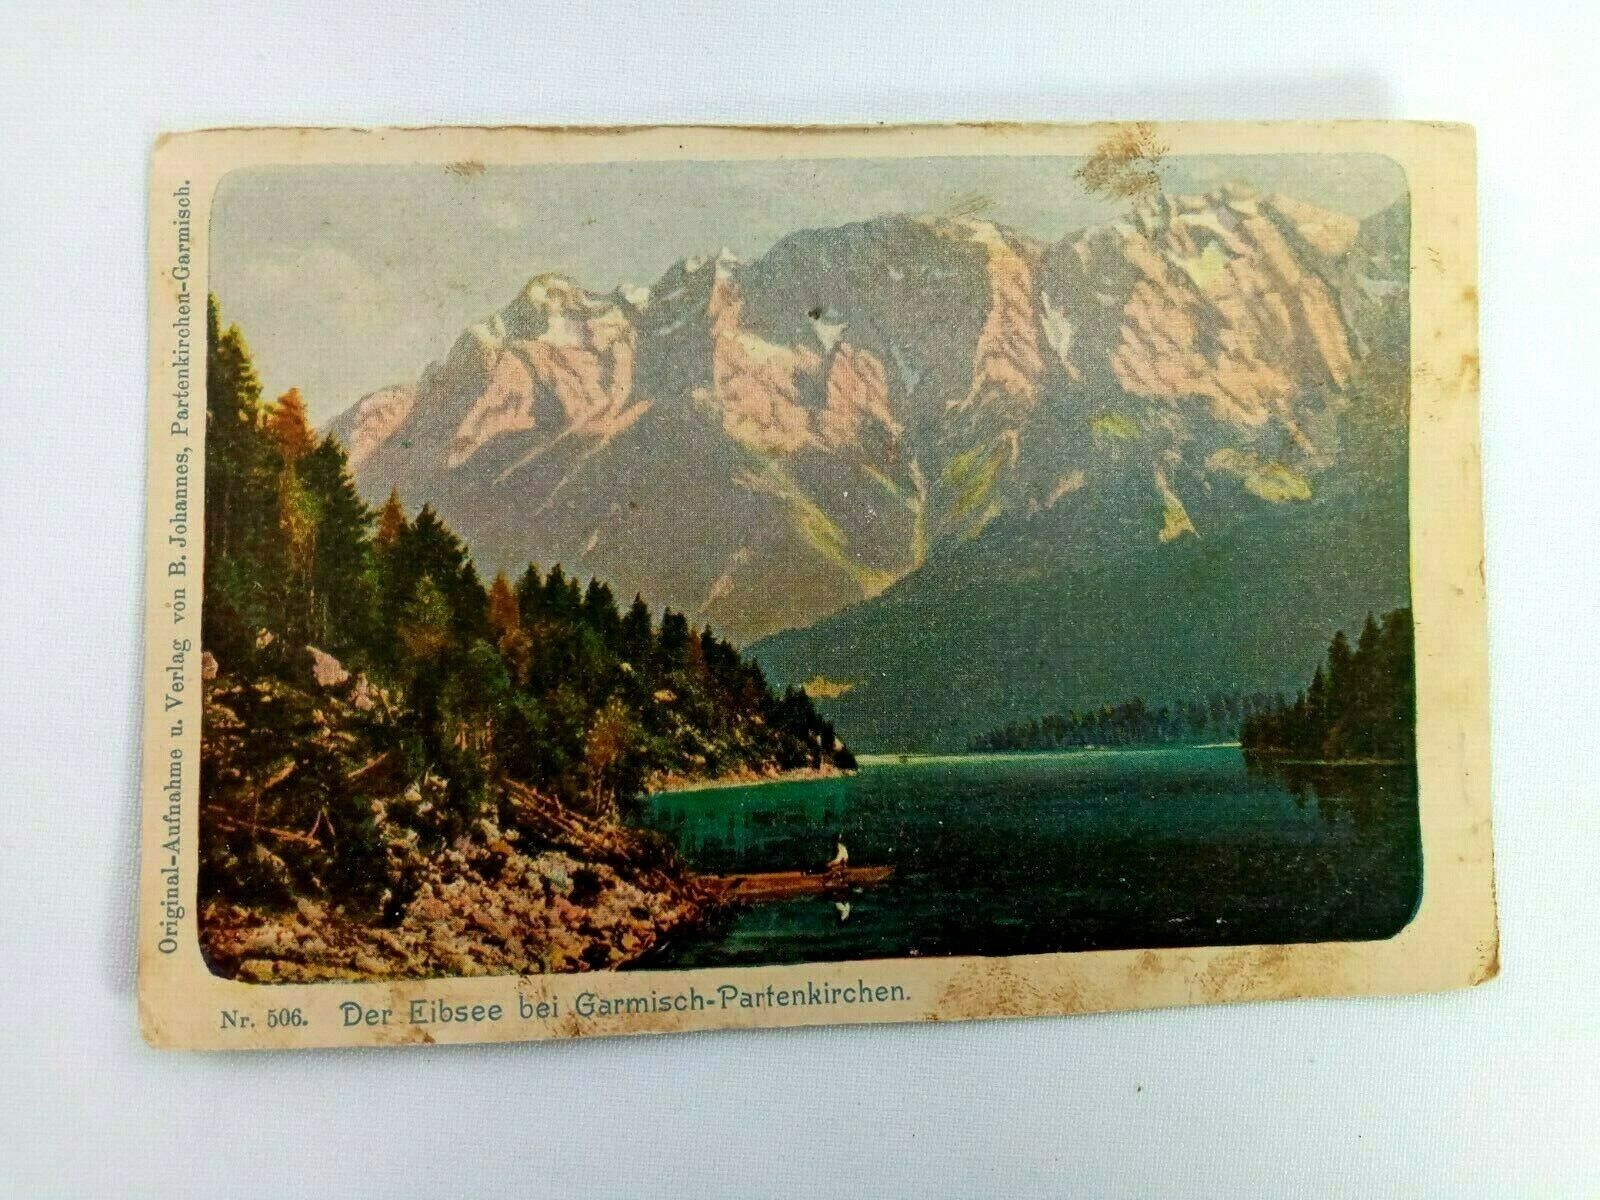 Vintage Postcard Der Eibsee bei Garmisch Partenkirchen Lake in Bavaria, Germany